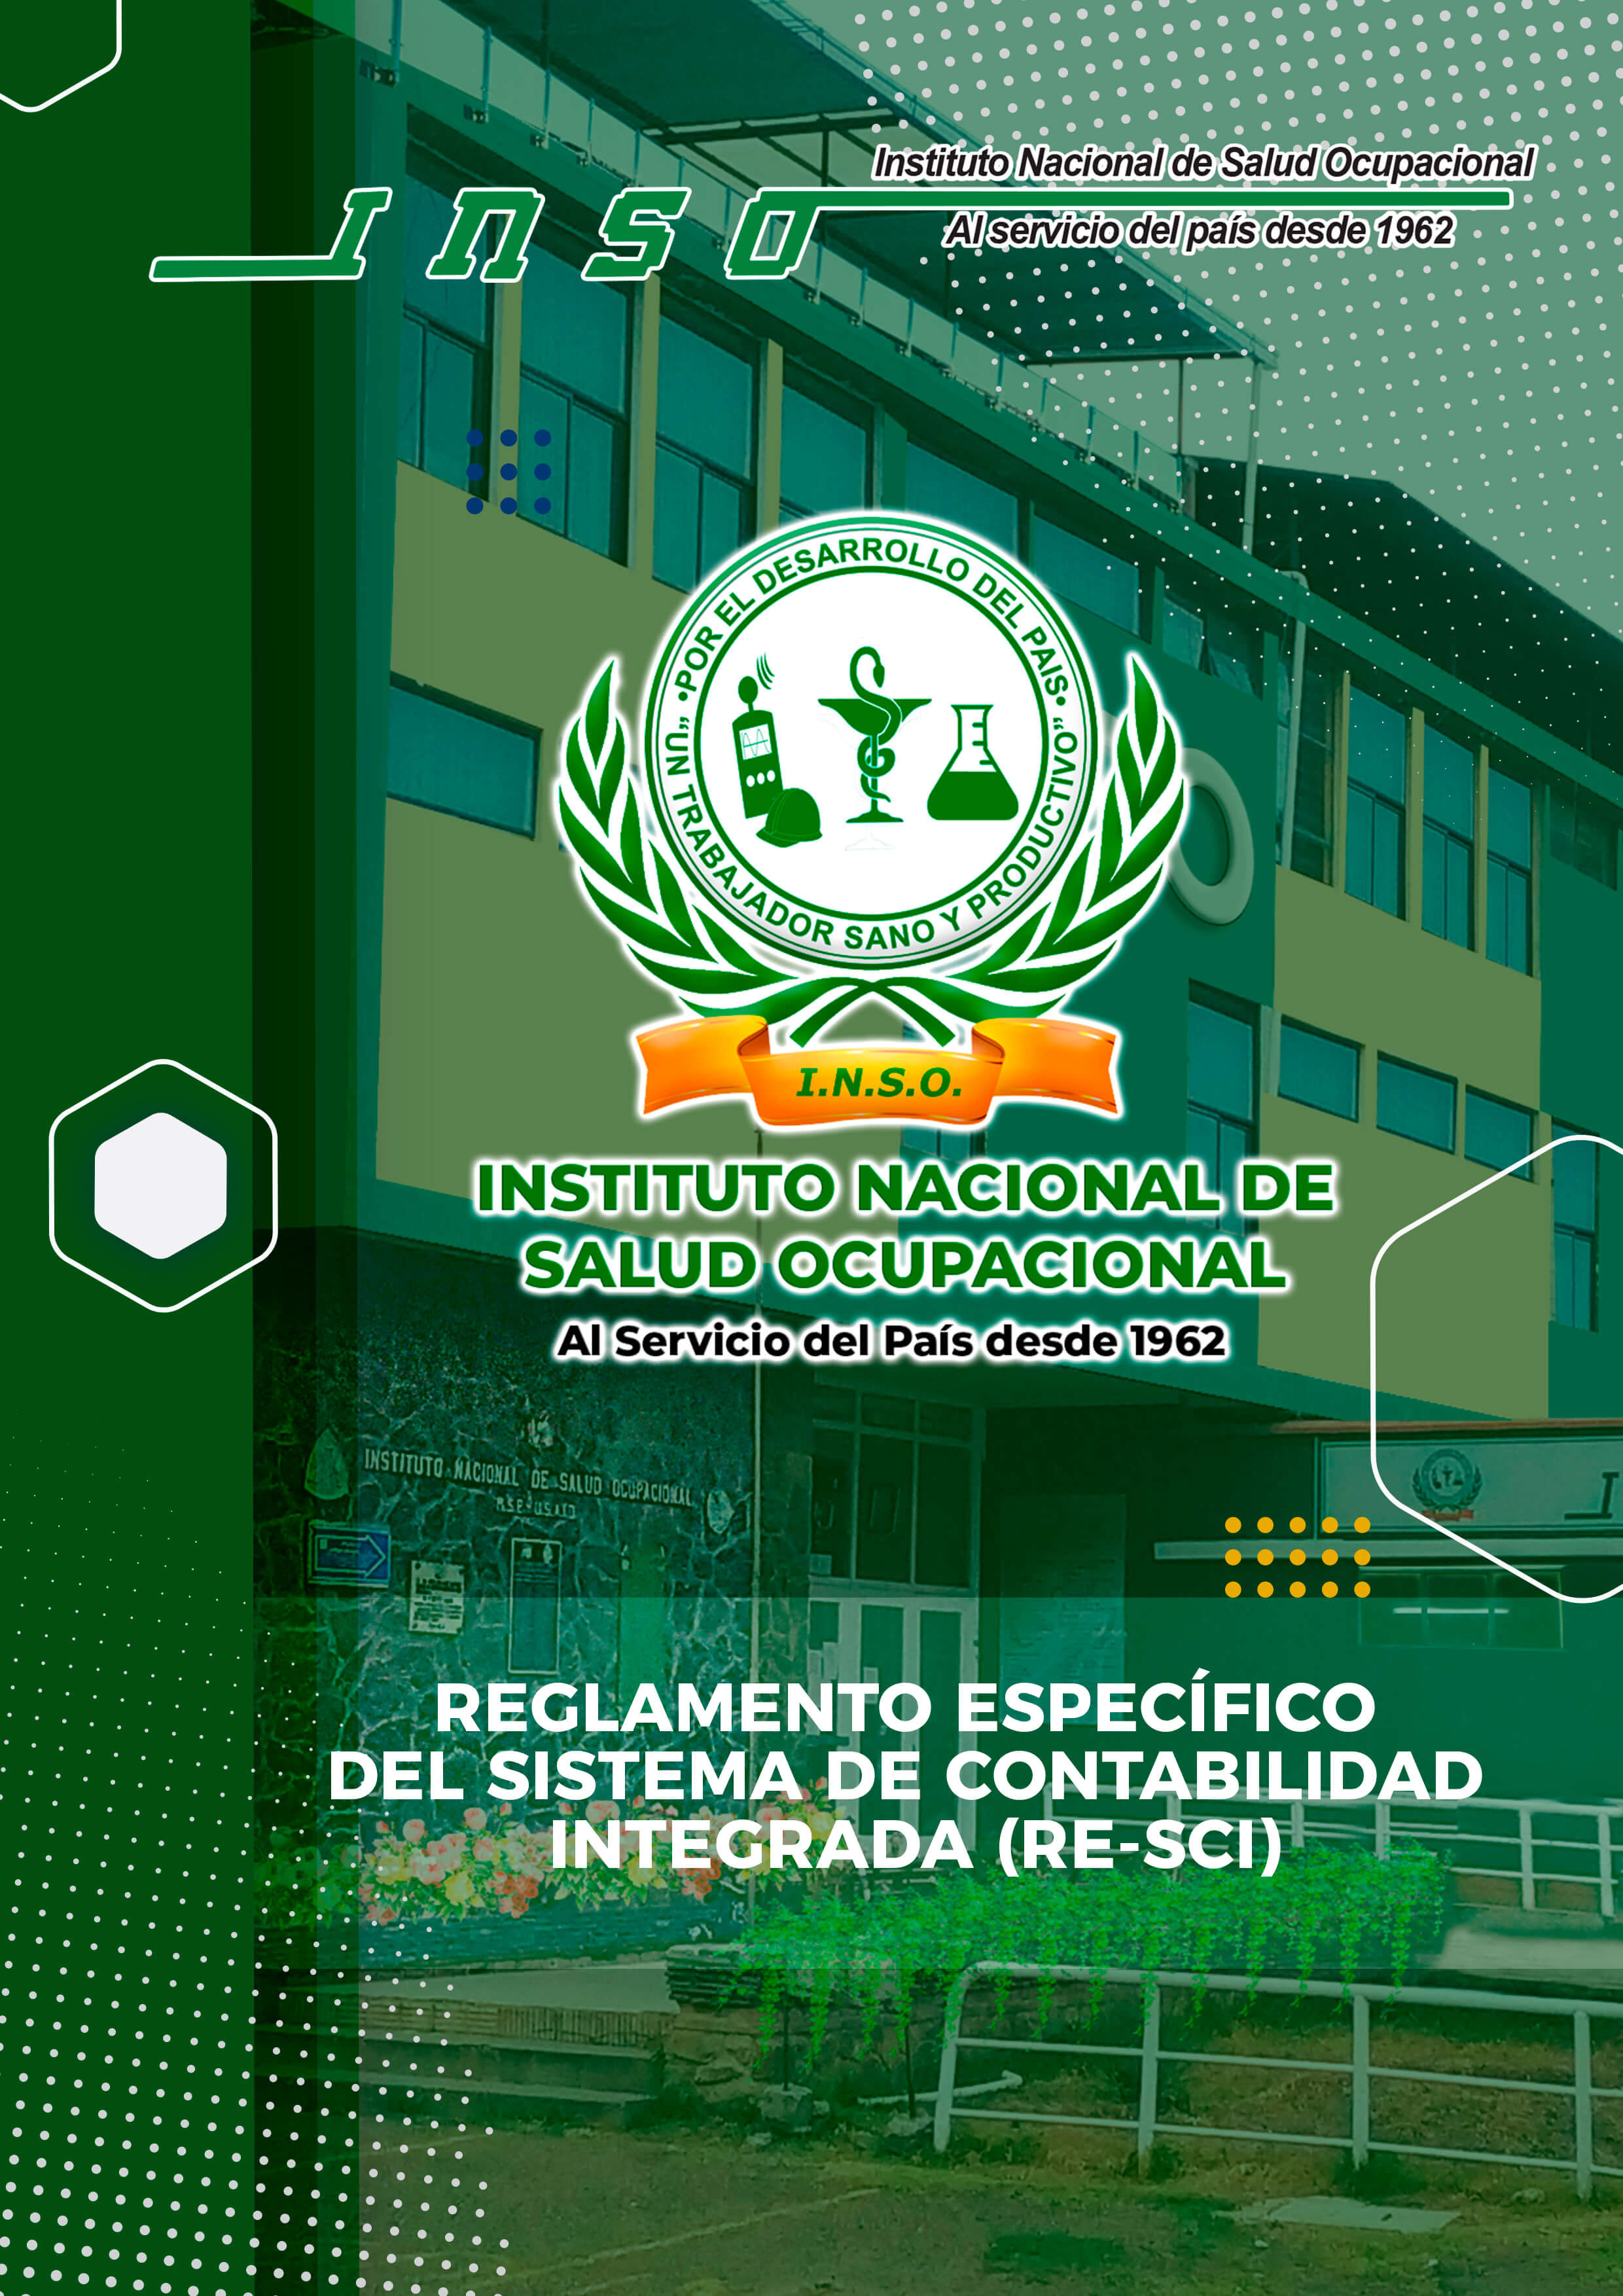 REGLAMENTO ESPECIFICO DEL SISTEMA DE CONTABILIDAD INTEGRADA (RE-SCI)